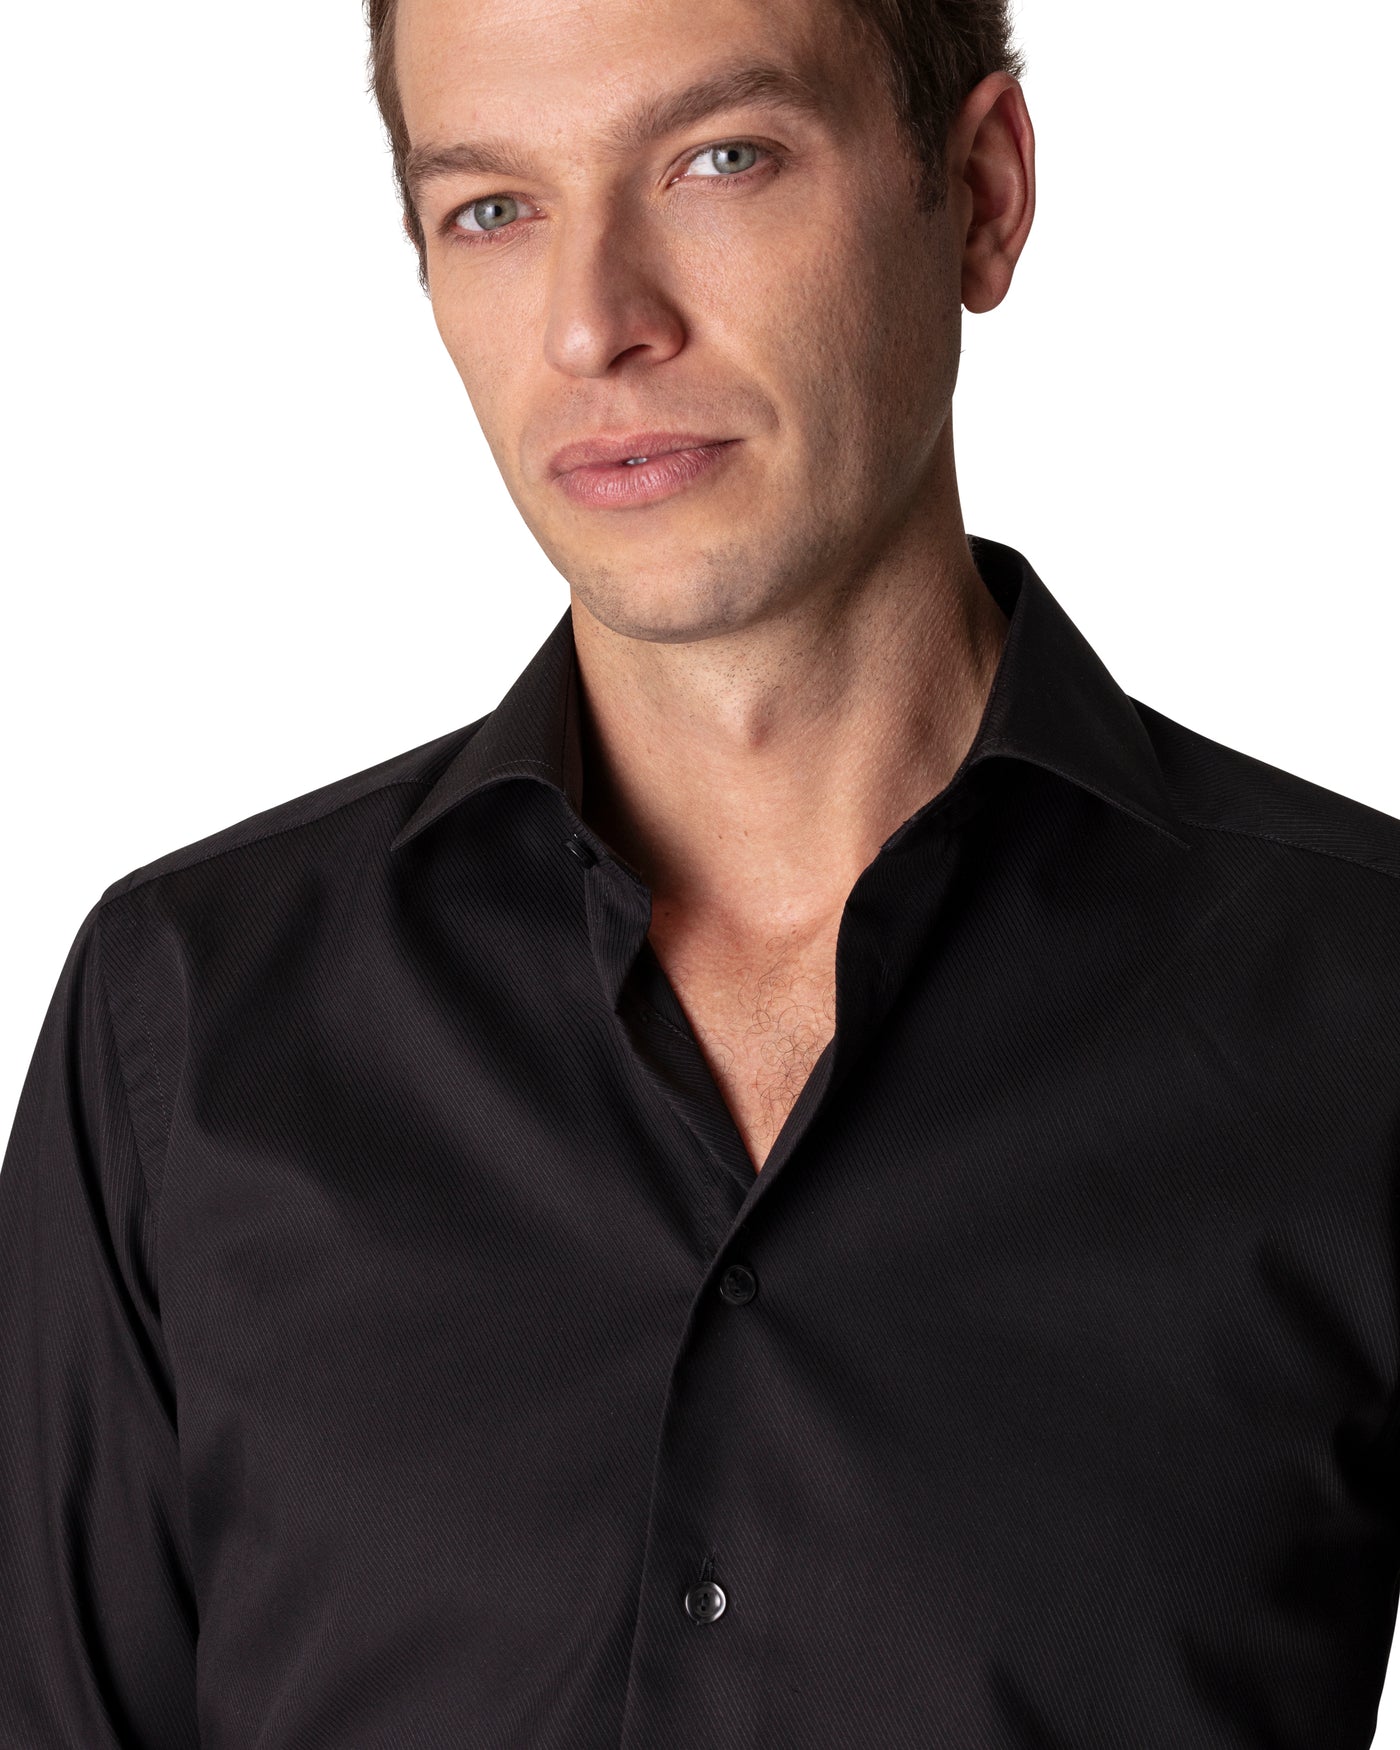 Eton skjorte i sort - Slimfit